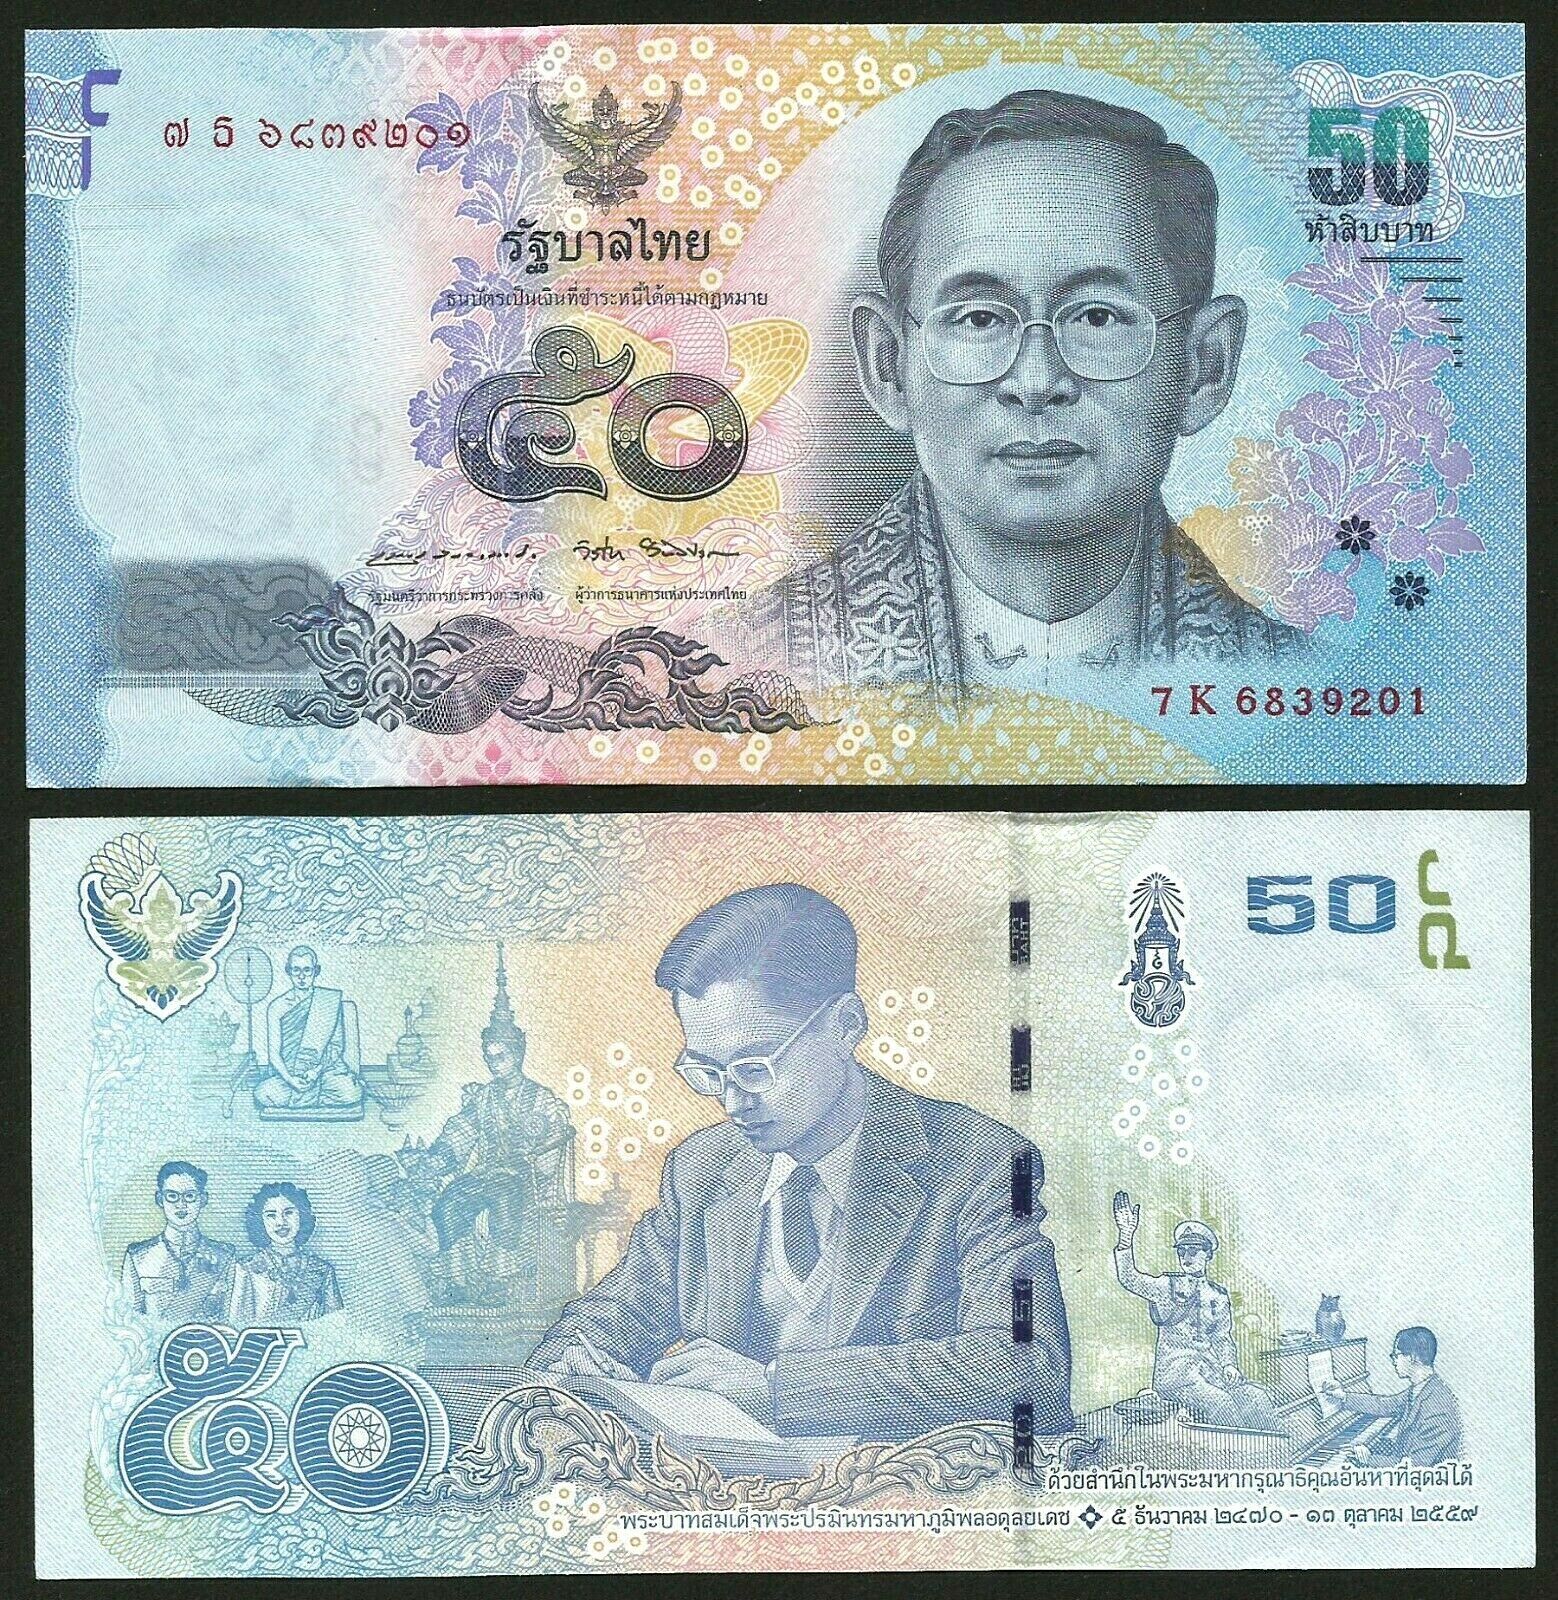 Tiền châu Á, 50 baht Thái Lan vua già sưu tầm